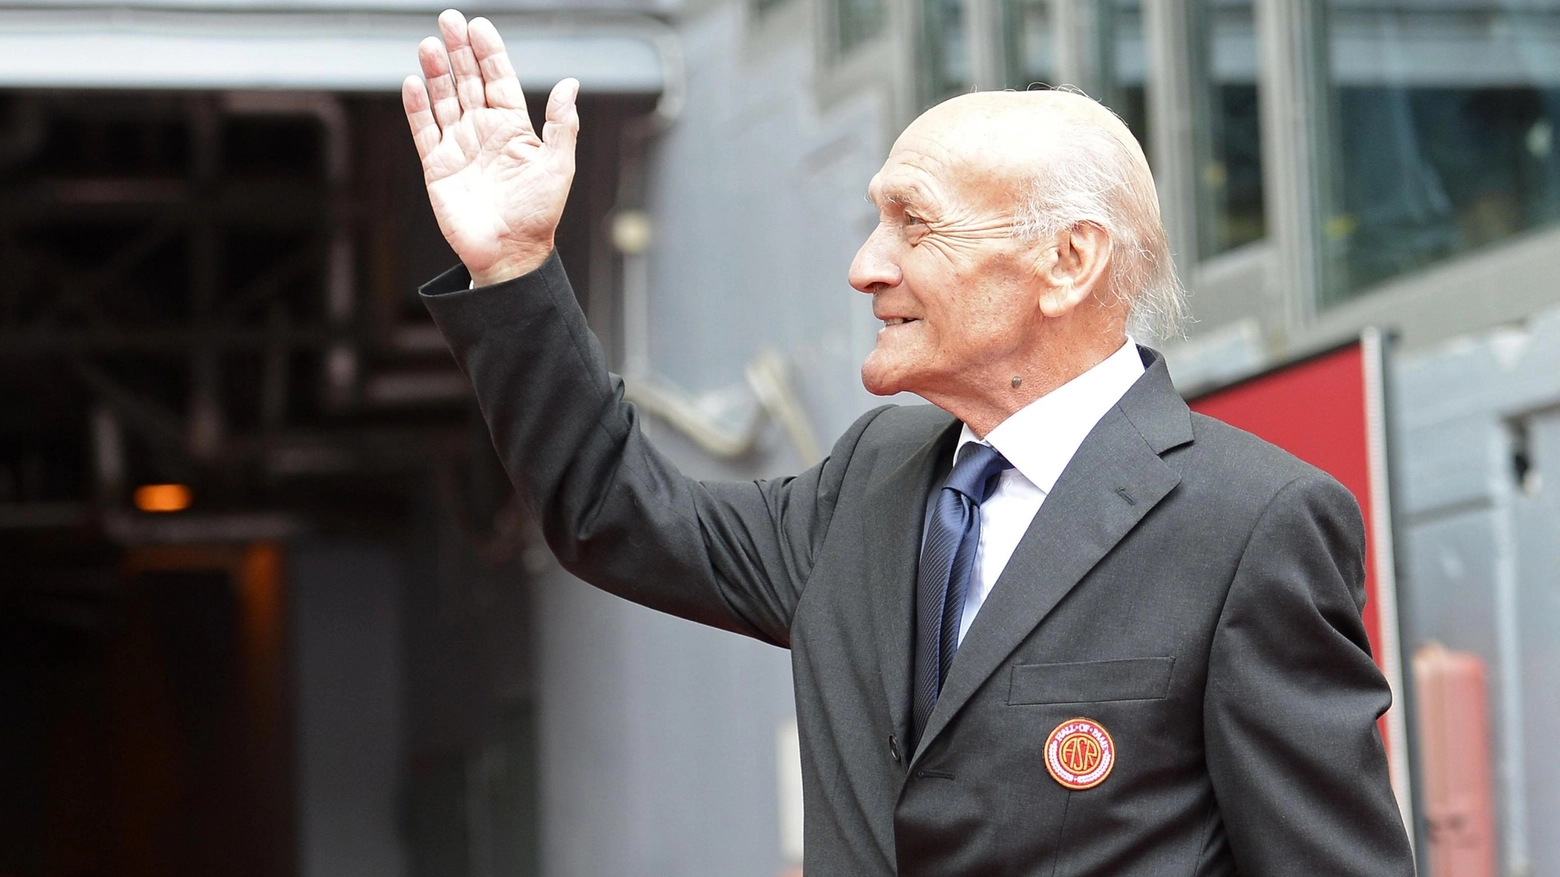 La Roma dice addio a Giacomo Losi, morto a 88 anni: "Ci hai sempre amato, ti abbiamo sempre amato"